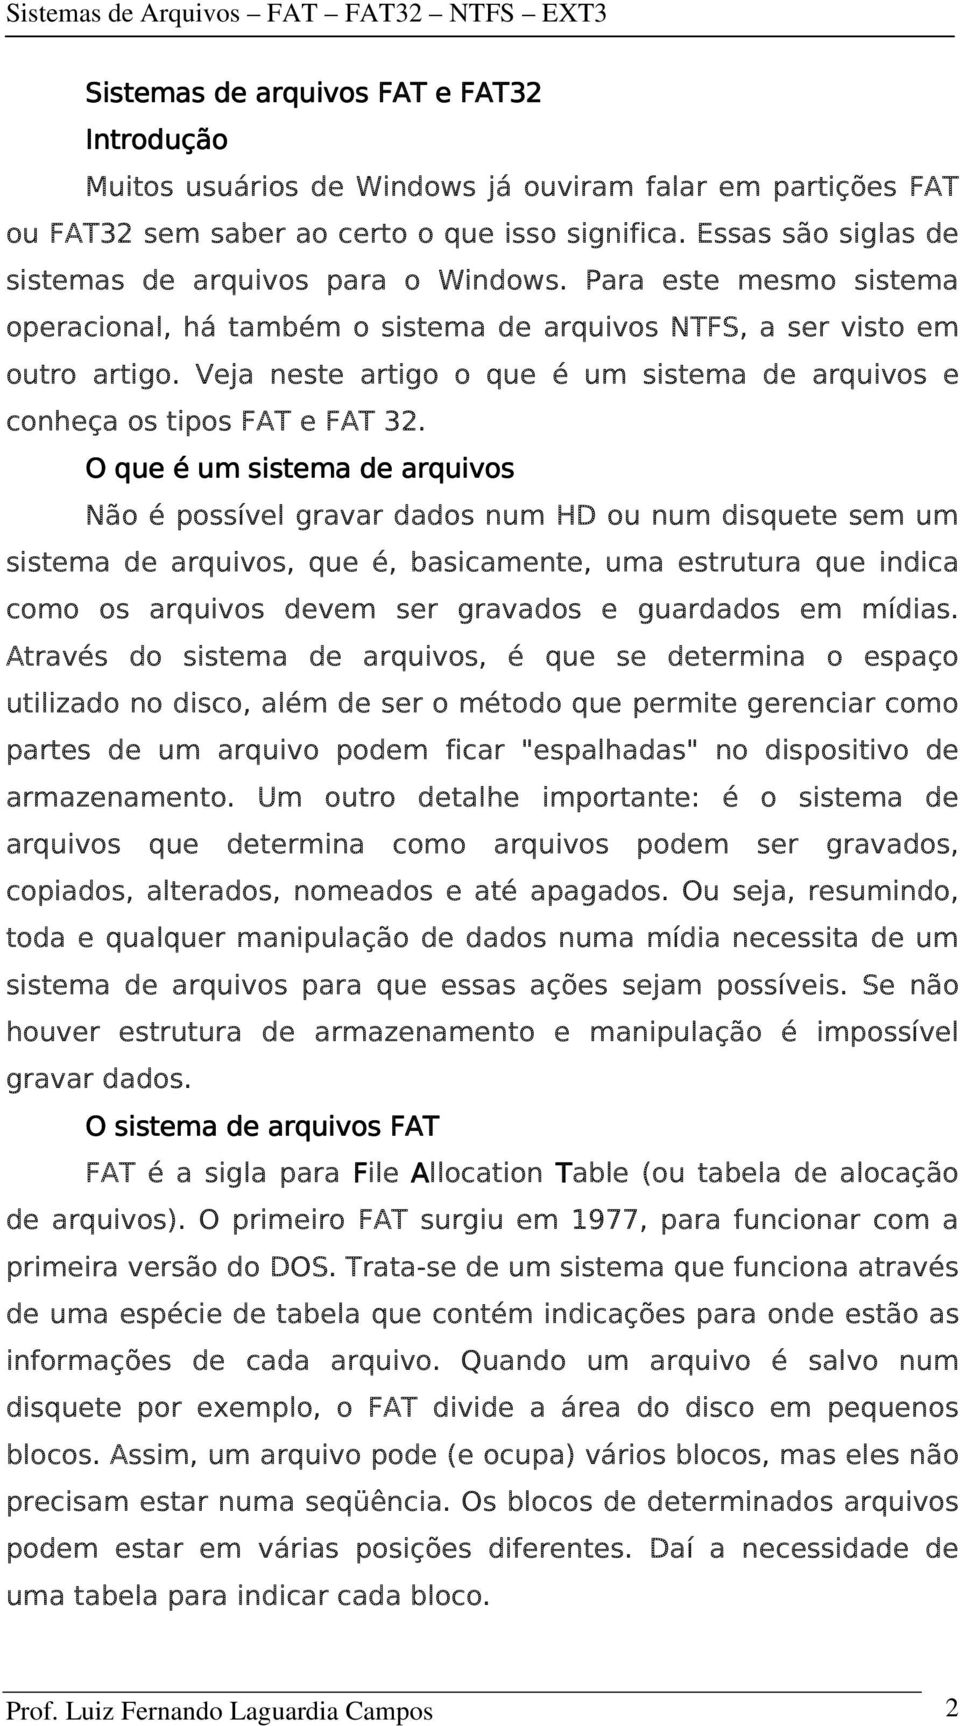 Veja neste artigo o que é um sistema de arquivos e conheça os tipos FAT e FAT 32.